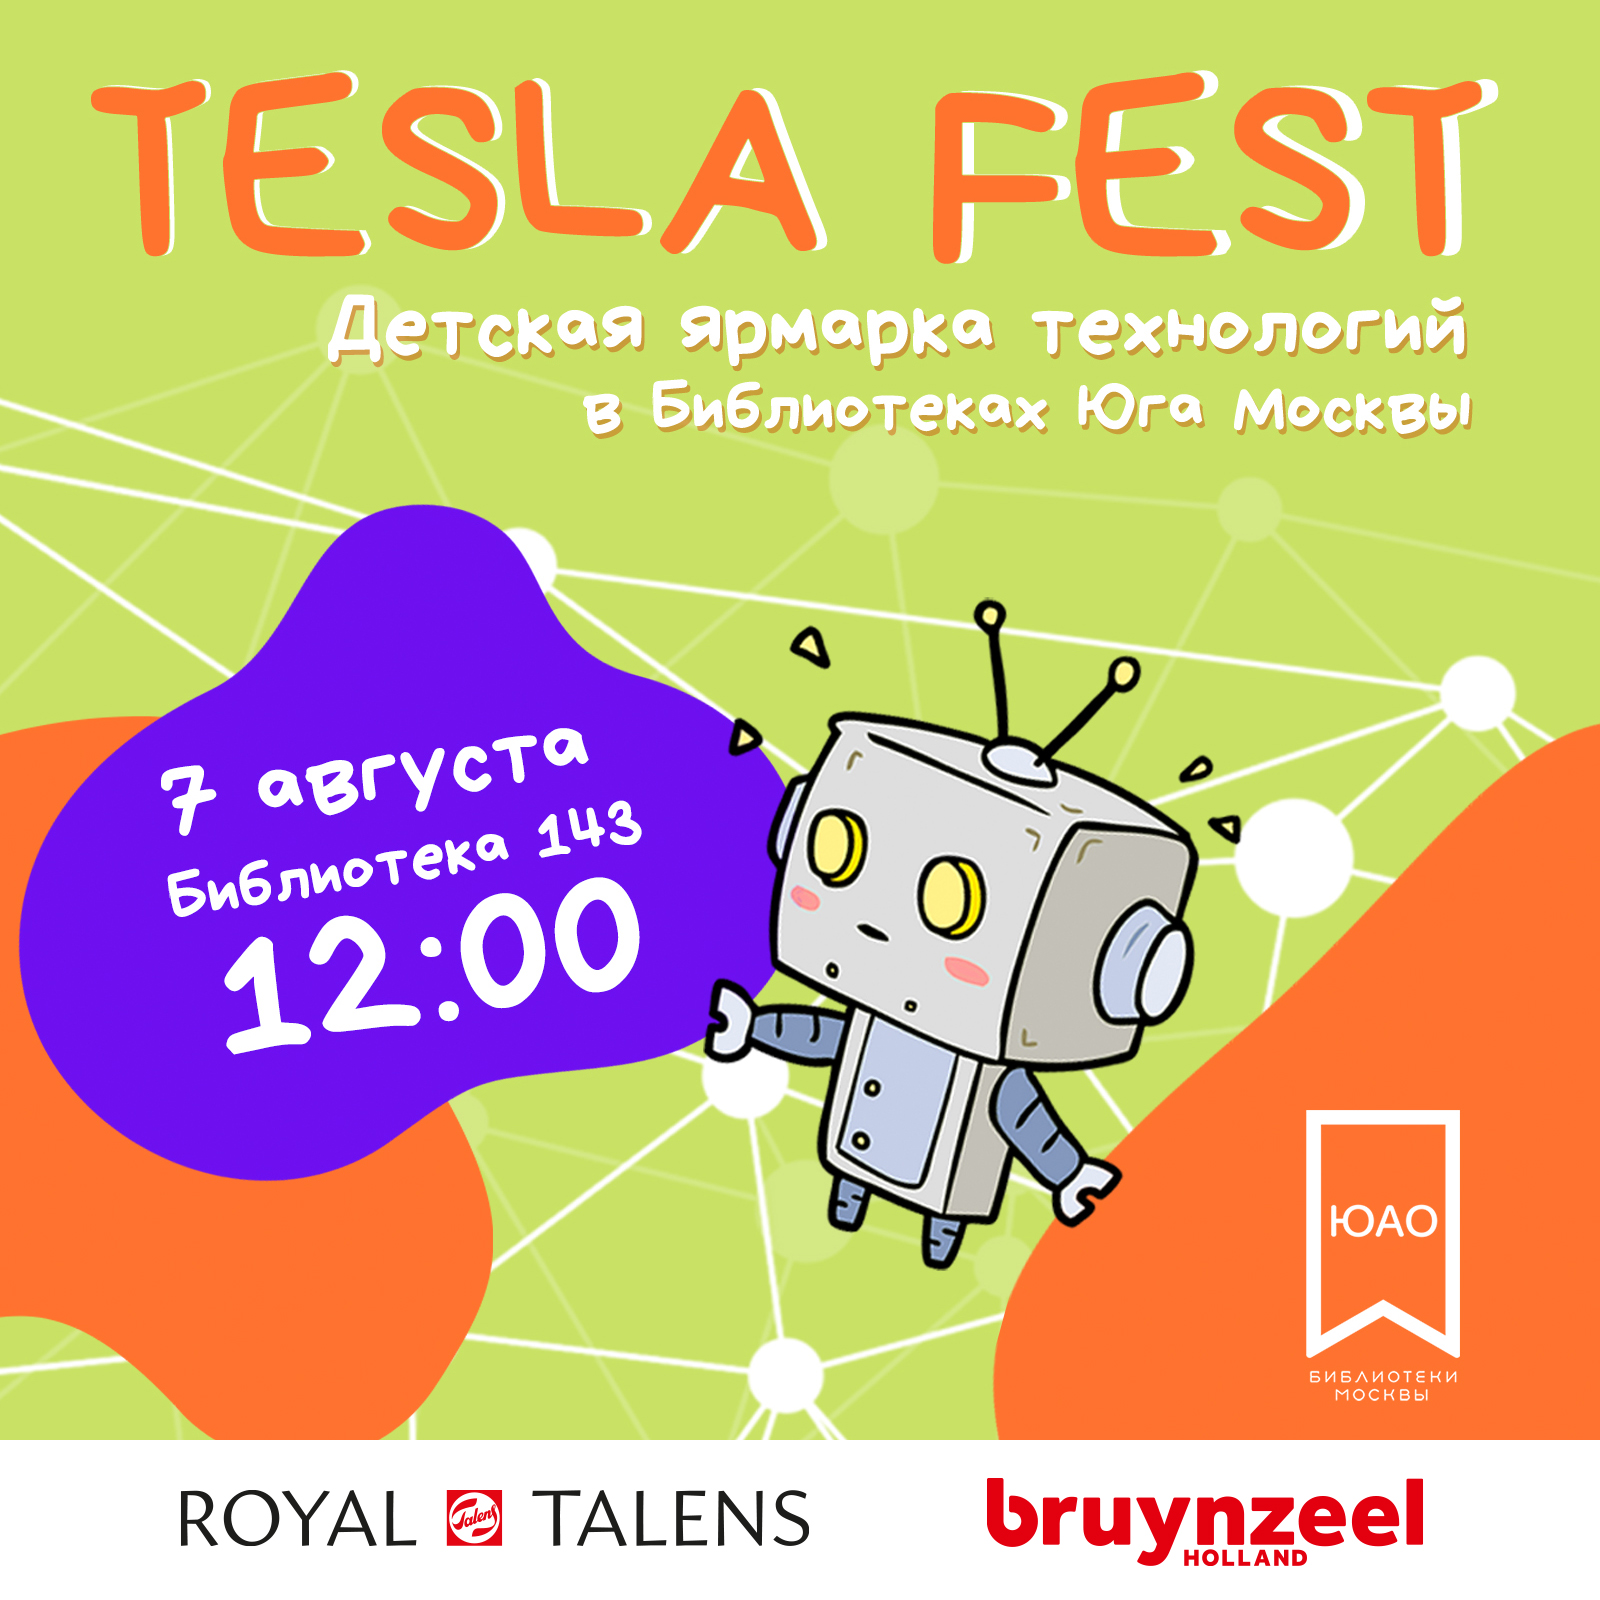 Royal Talens и Bruynzeel в творческой зоне Tesla Fest!